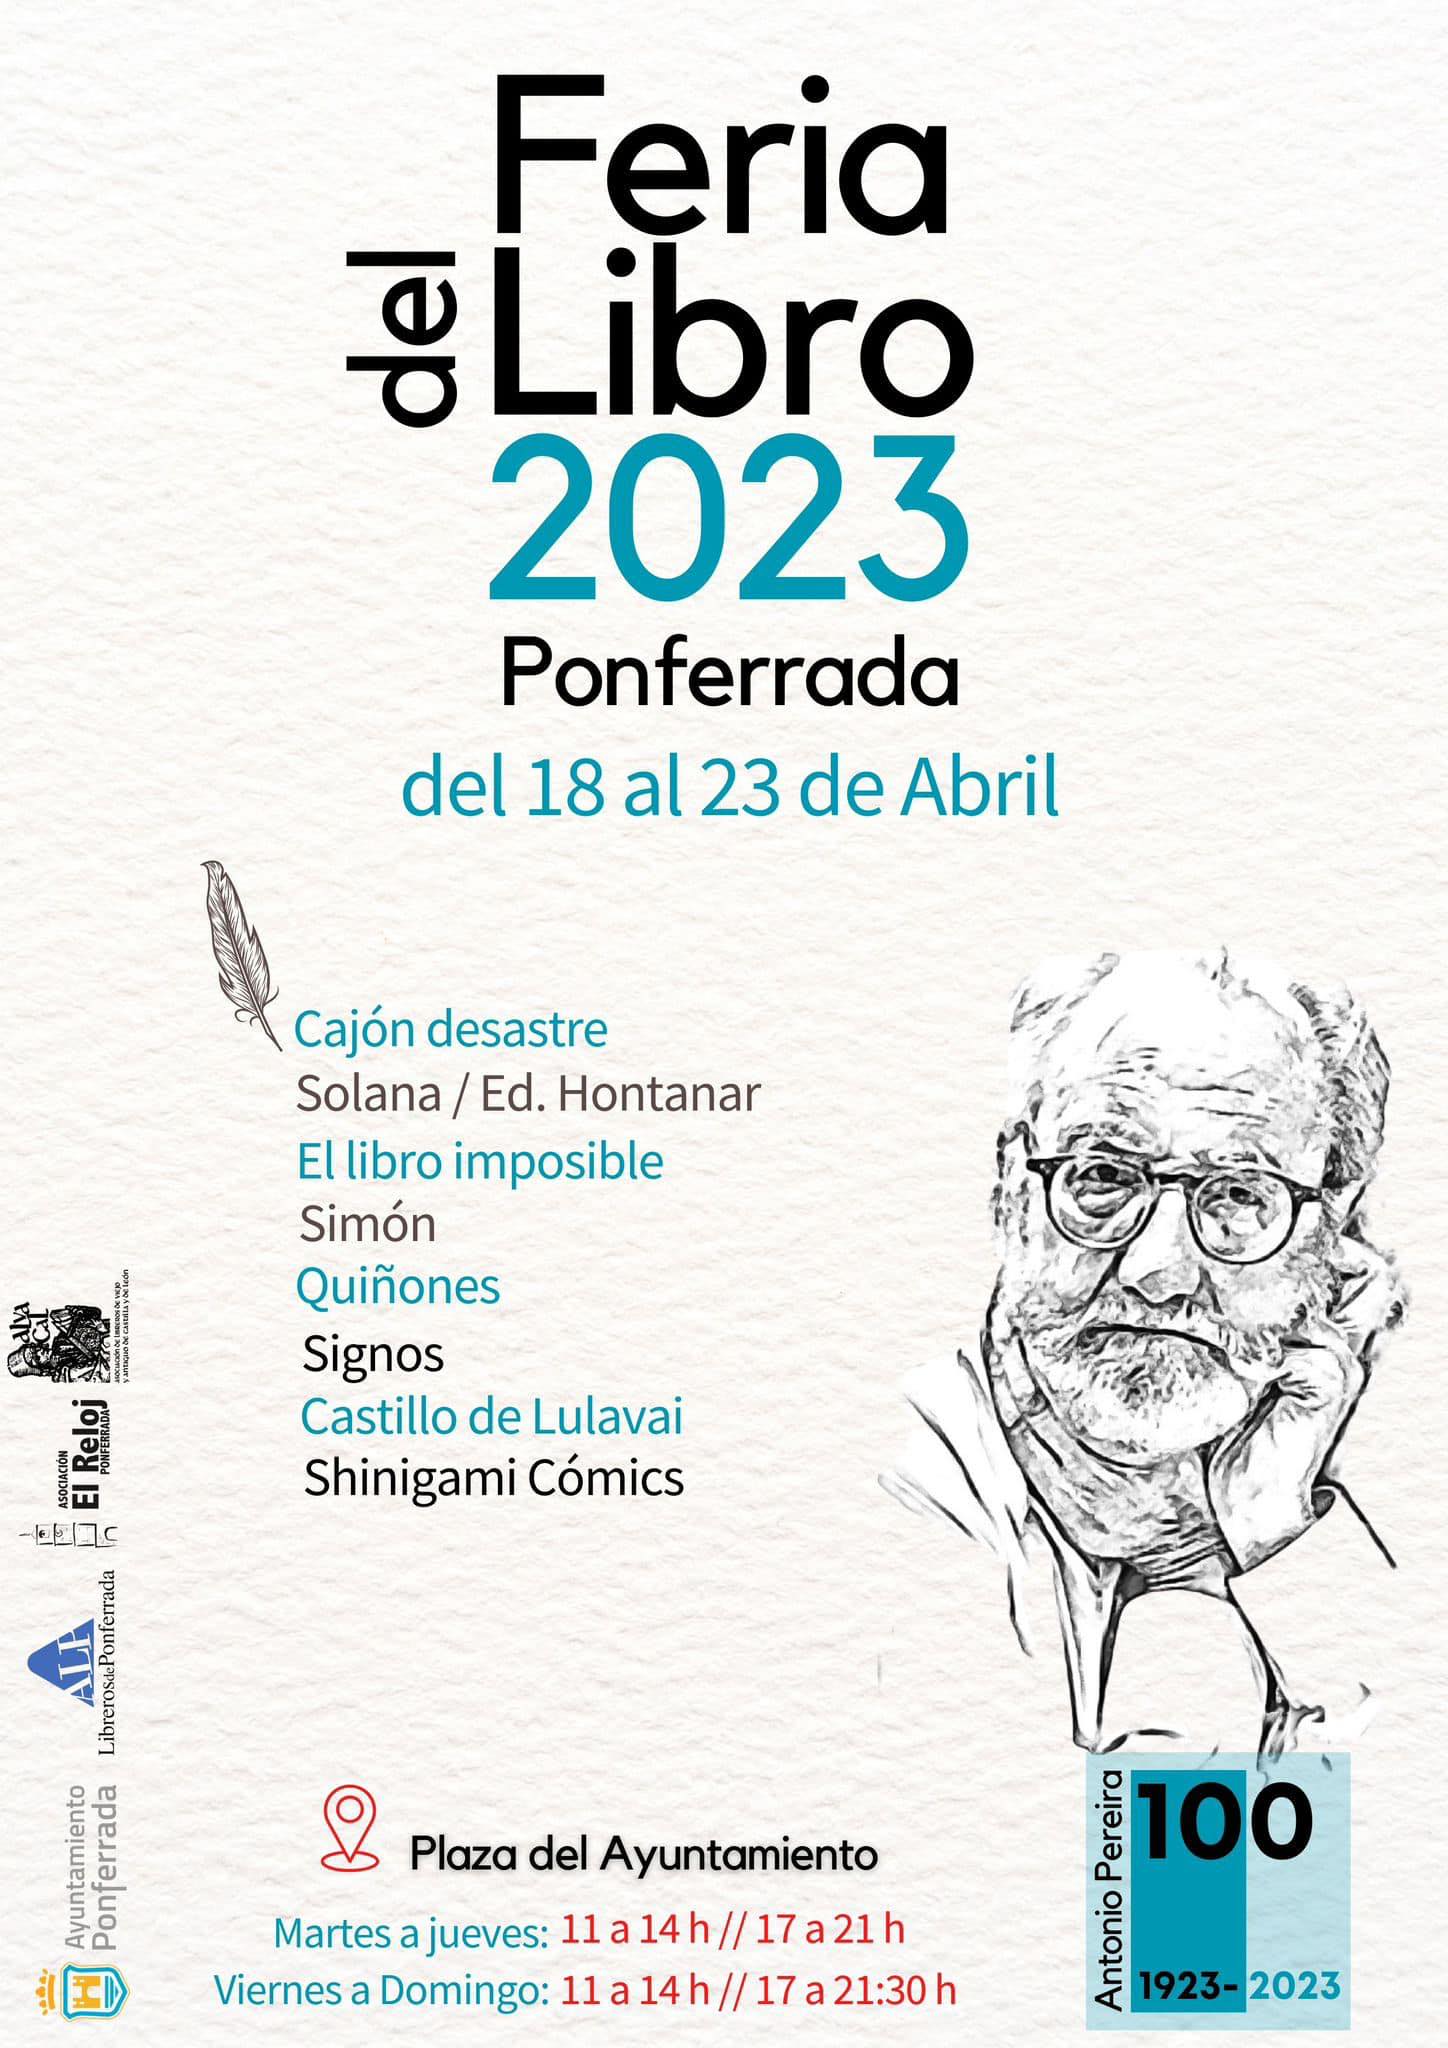 La Feria del Libro de Ponferrada se celebrará del 18 al 23 de abril 2